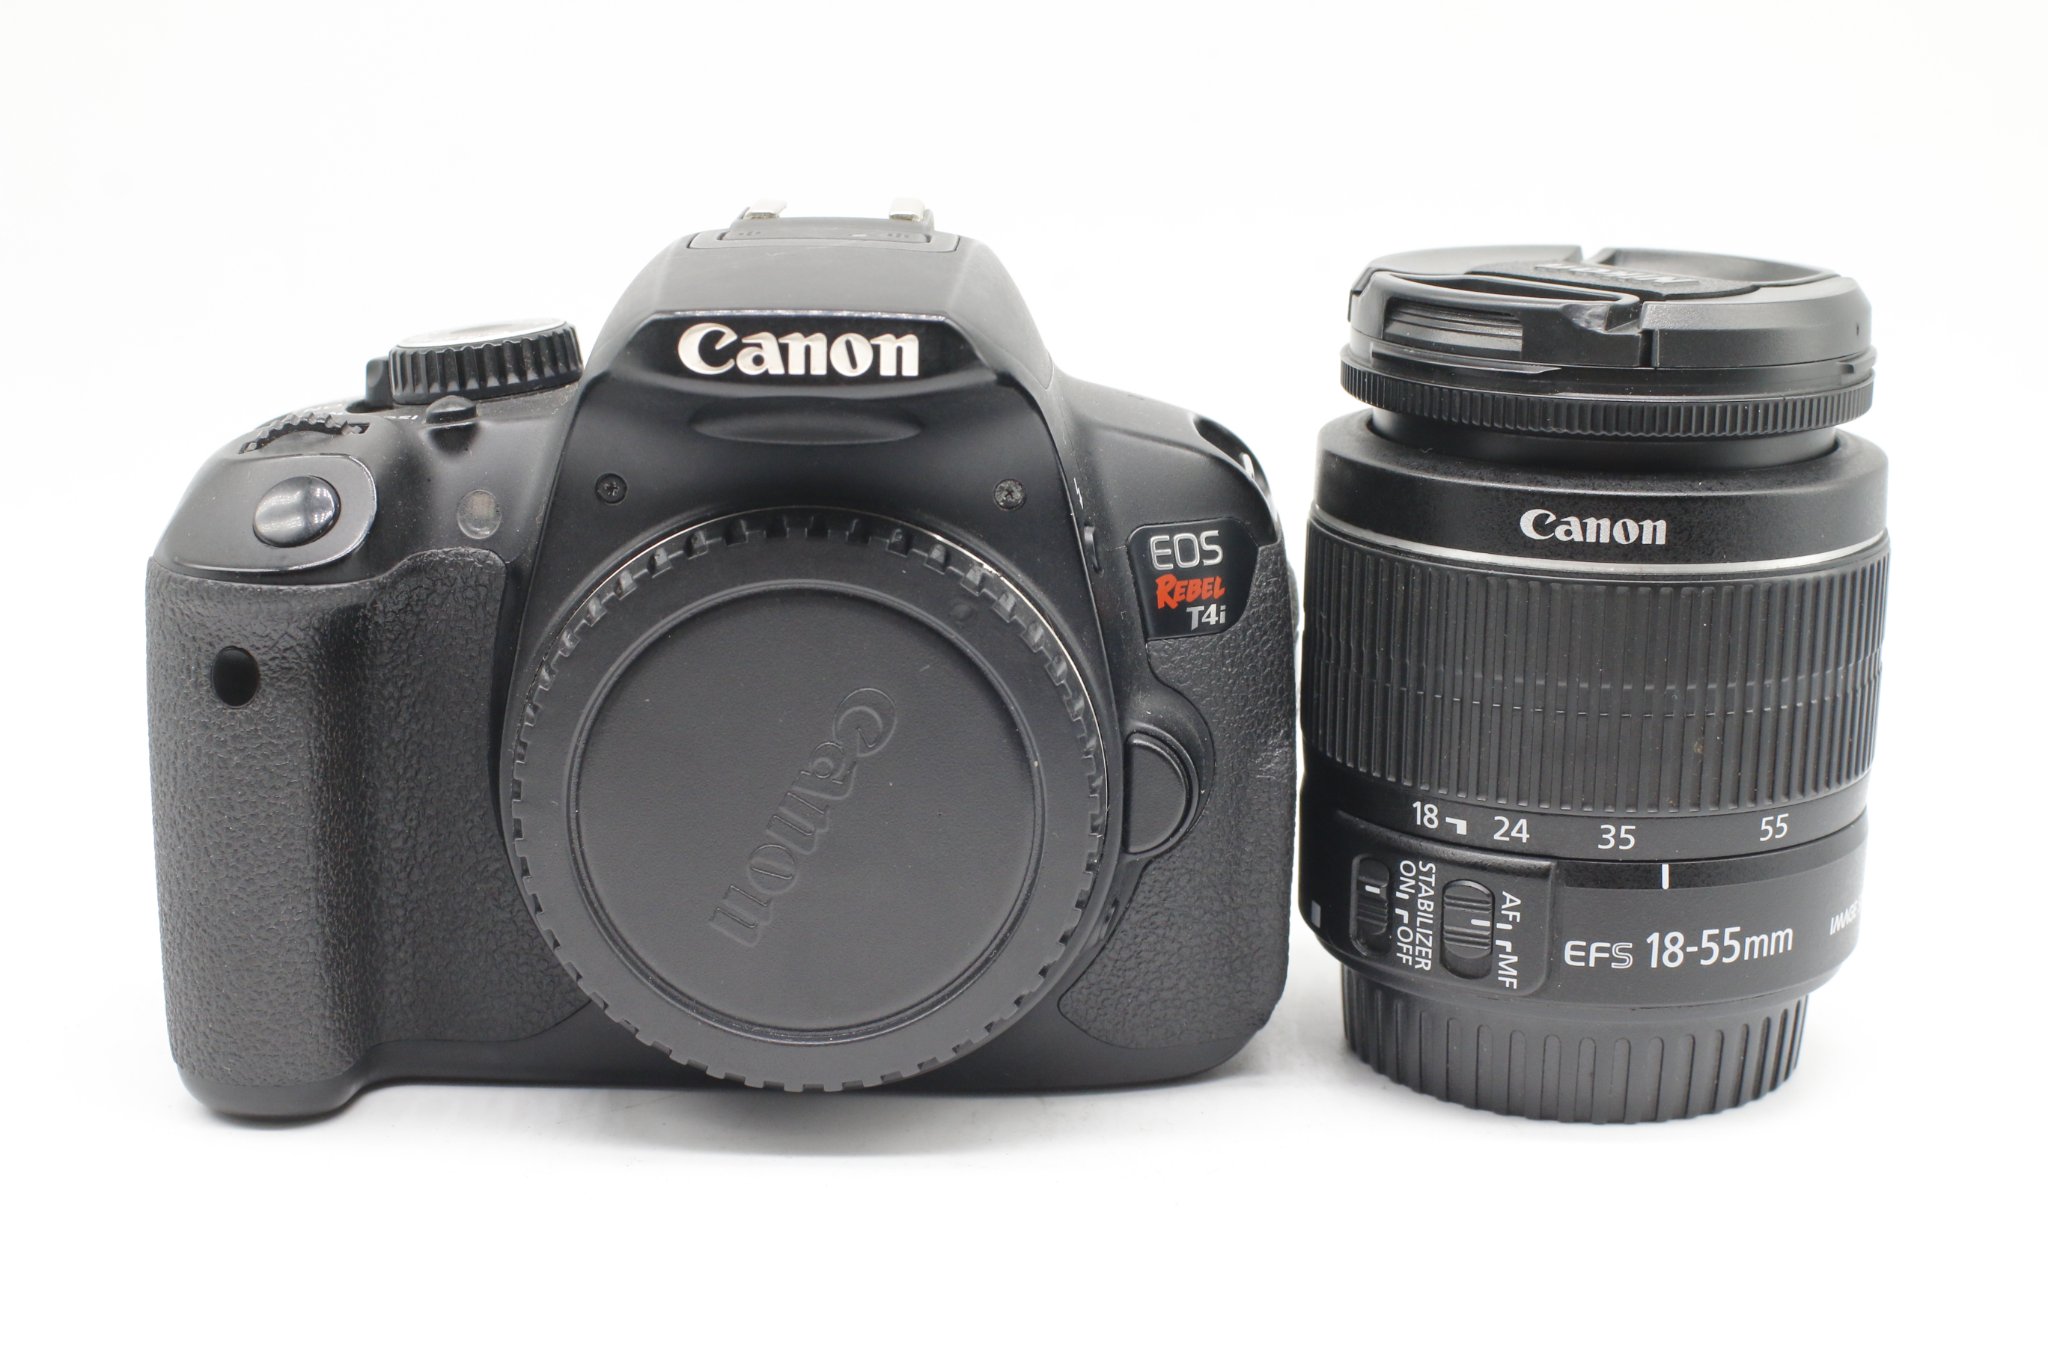 Nếu bạn đang tìm kiếm một chiếc máy ảnh chất lượng với những tính năng đa dạng và thiết kế sang trọng, Canon EOS Rebel T4i chính là sự lựa chọn hoàn hảo. Hãy đến xem ngay hình ảnh liên quan để khám phá thêm về chiếc máy ảnh này.